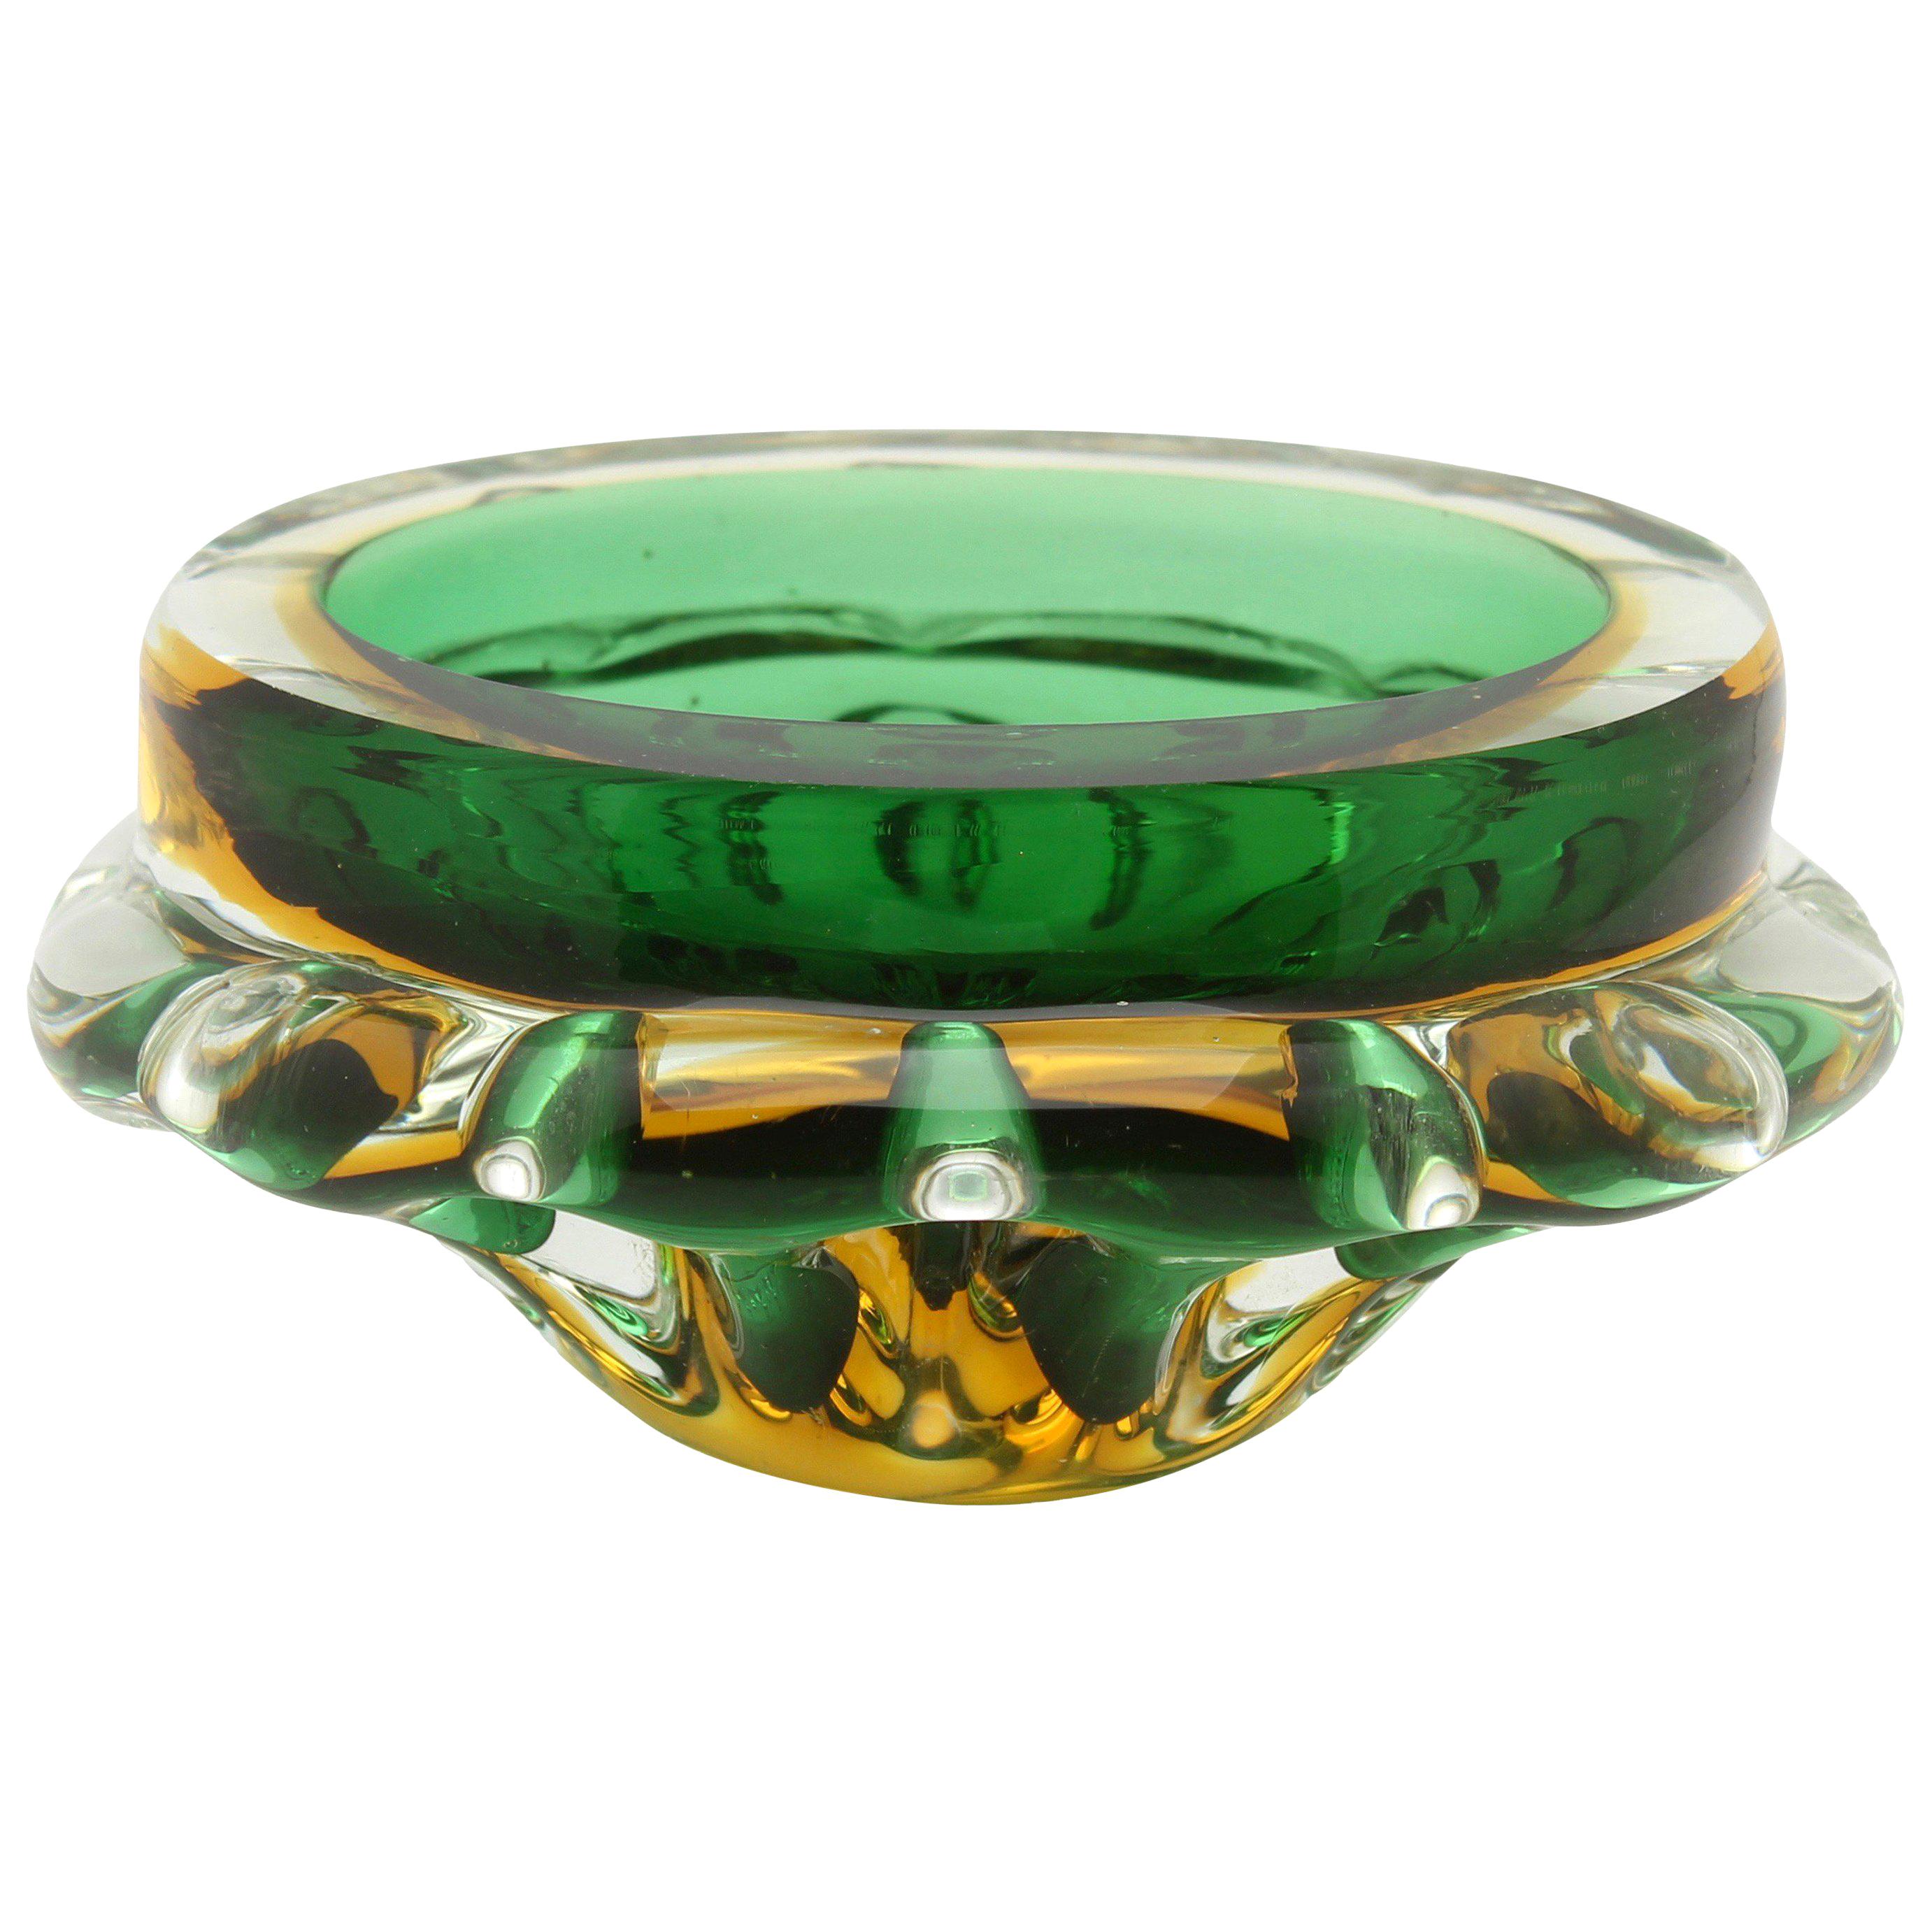 Murano Glass Bowl Attributed to Flavio Poli for Seguso D'arte, circa 1960